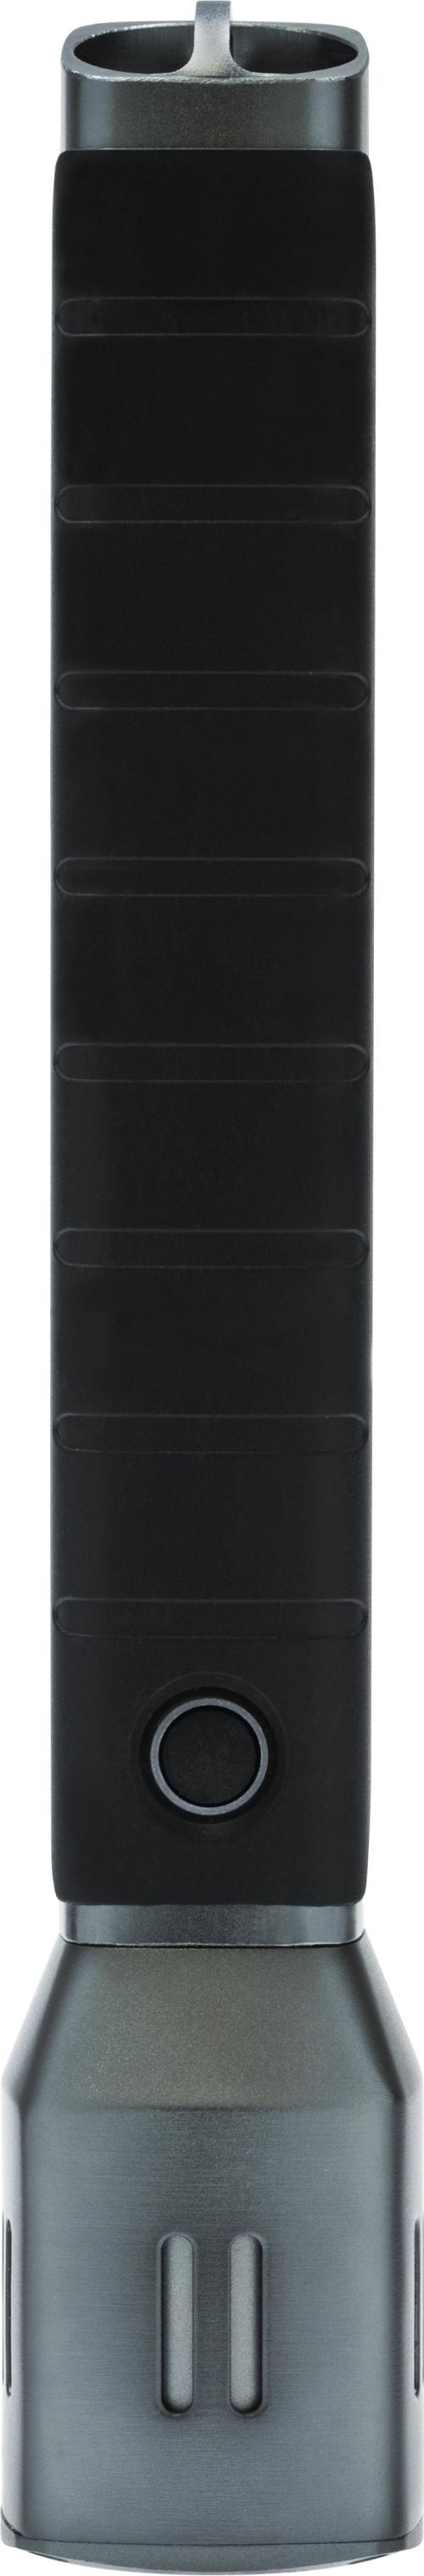 Taschenlampe TL-525, 25,5 cm